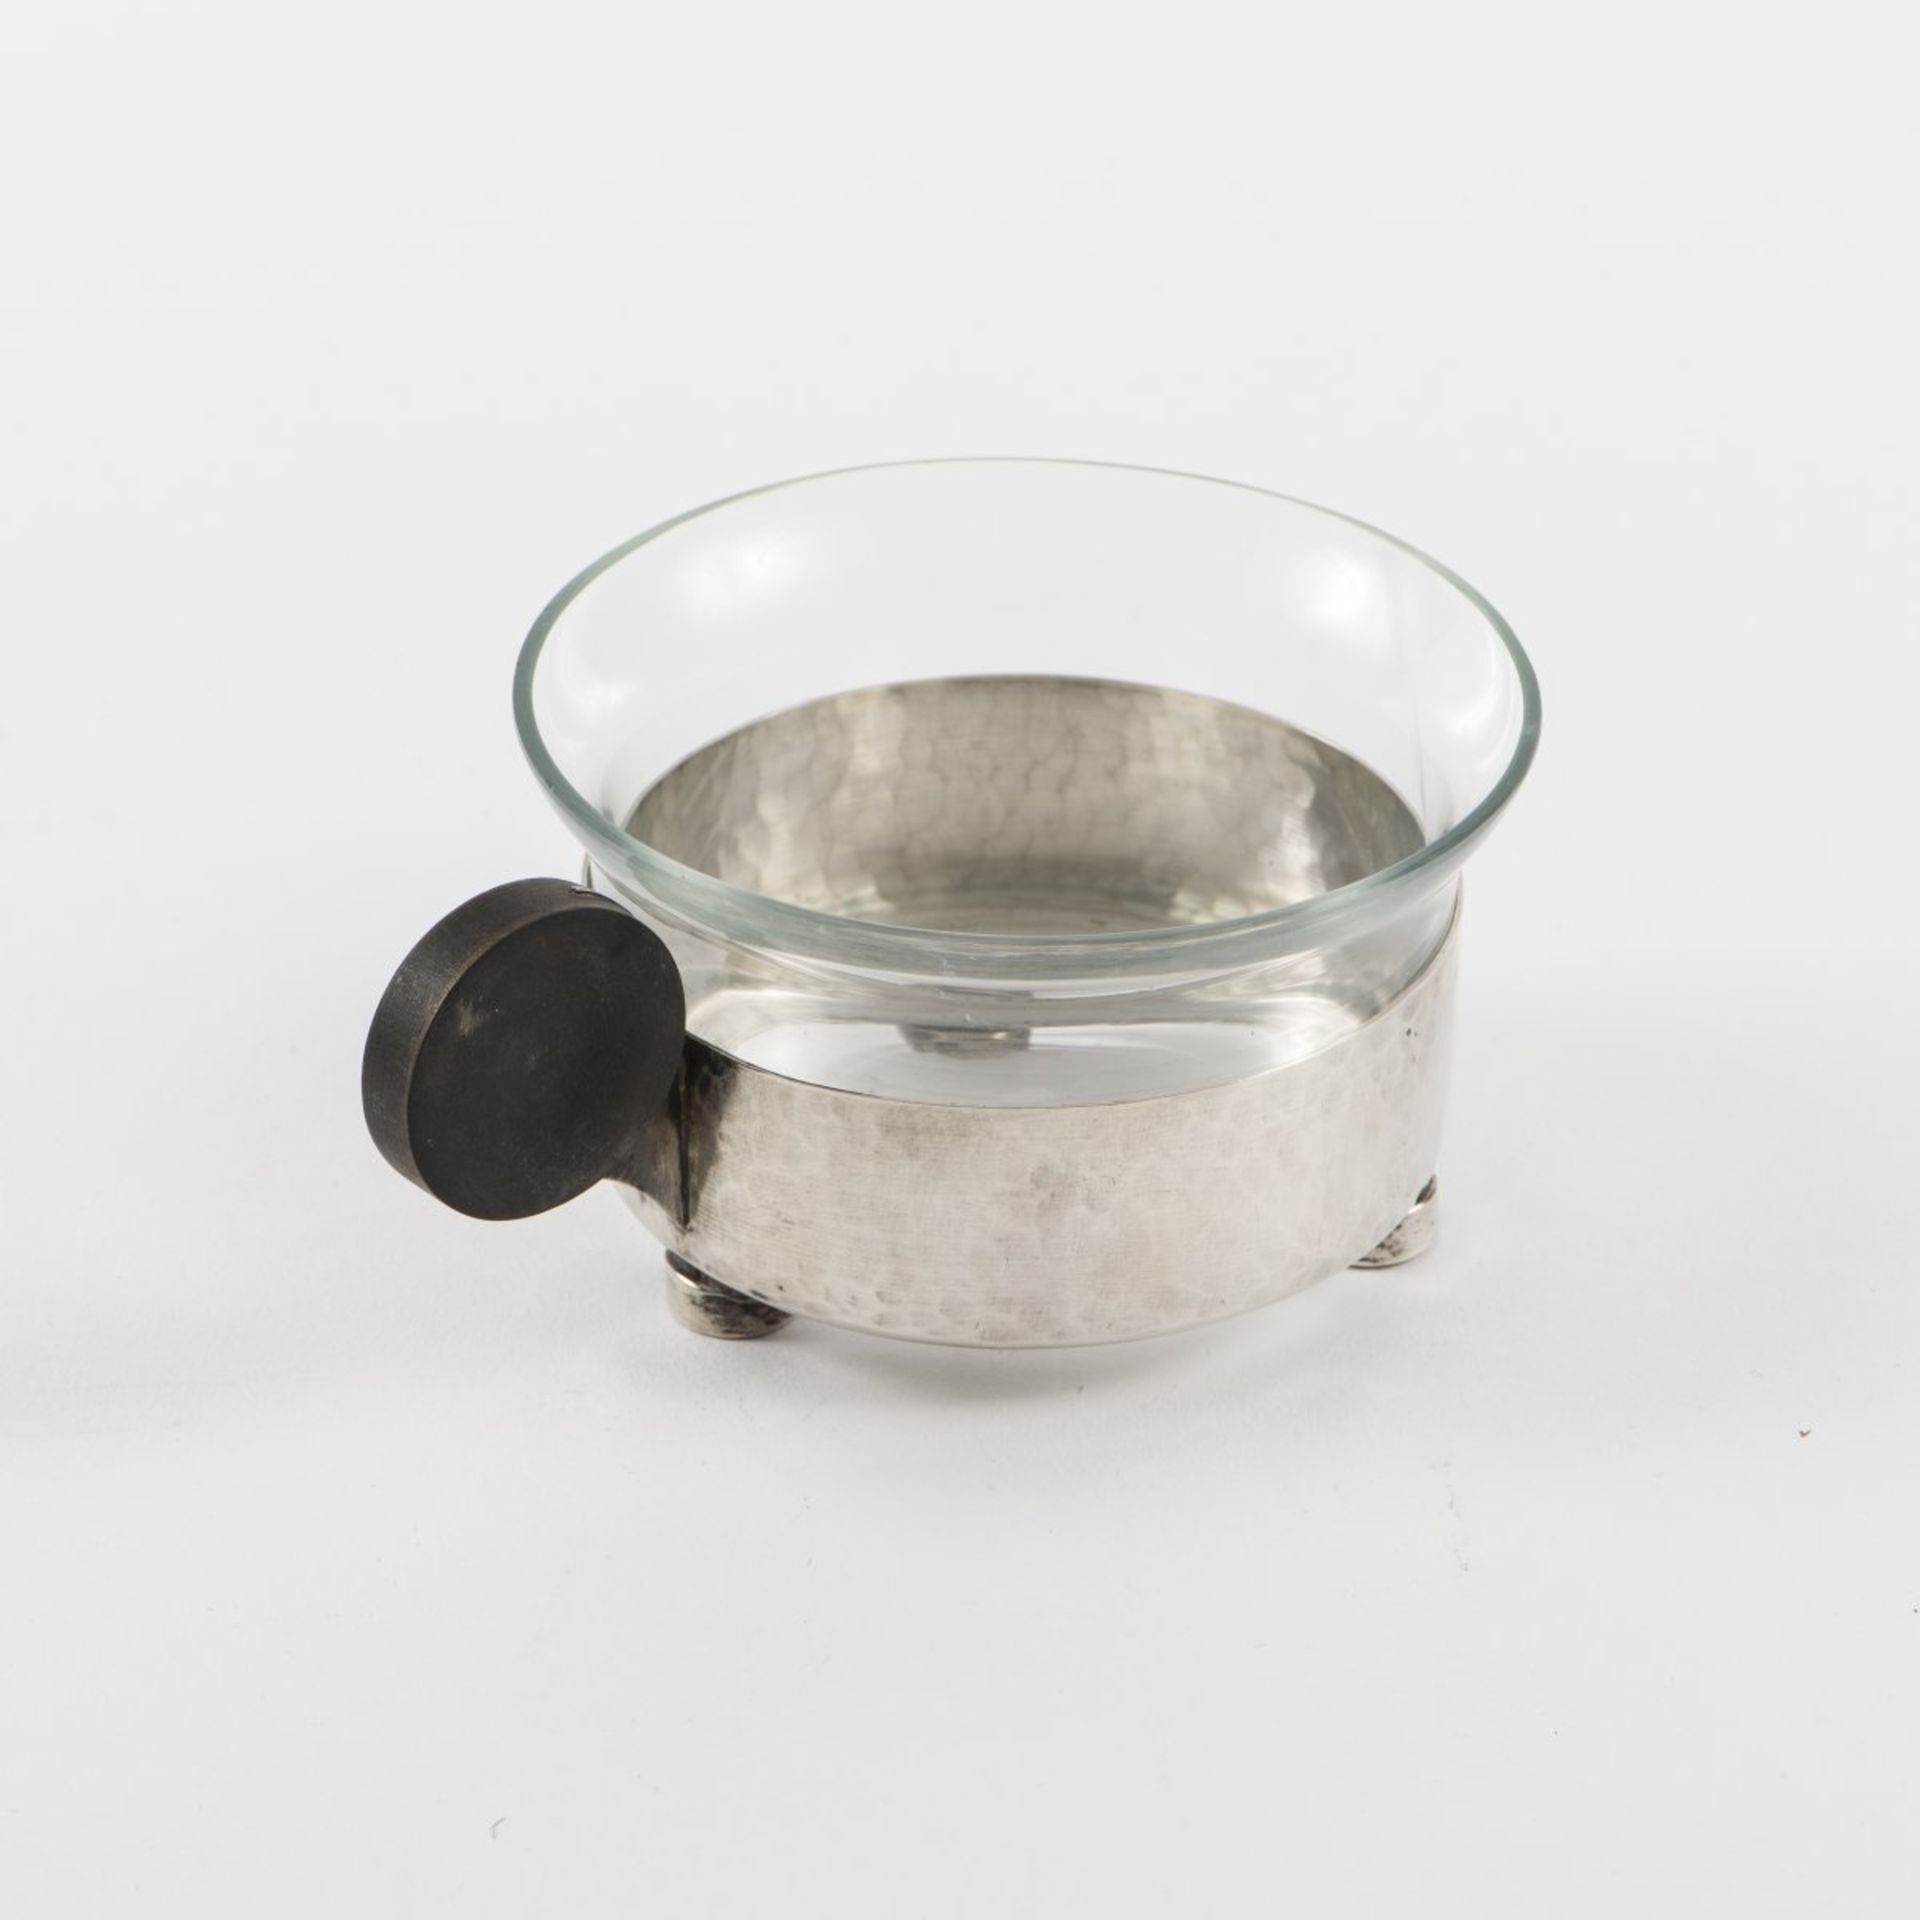 Deutschland, Sechs Teegläser, um 1930Sechs Teegläser, um 1930H. 5,2 cm.Silber, Glaseinsatz, - Bild 5 aus 6